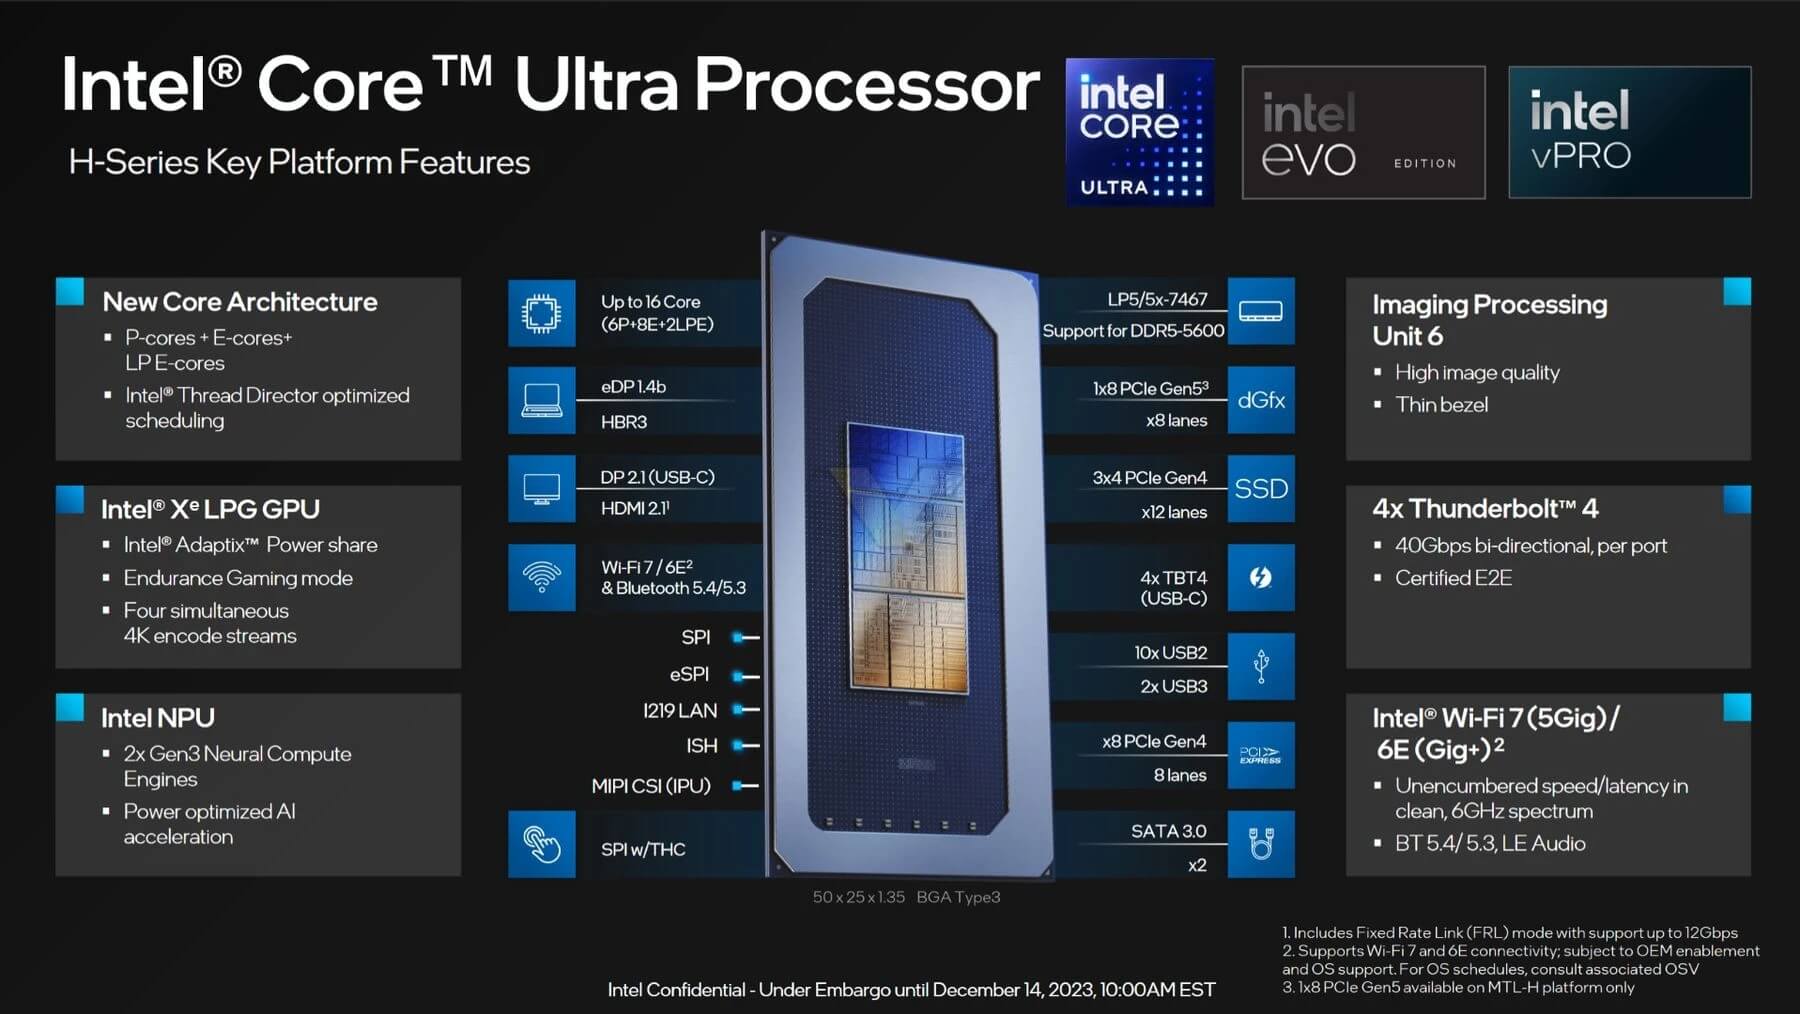 Intel Core Ultra 100